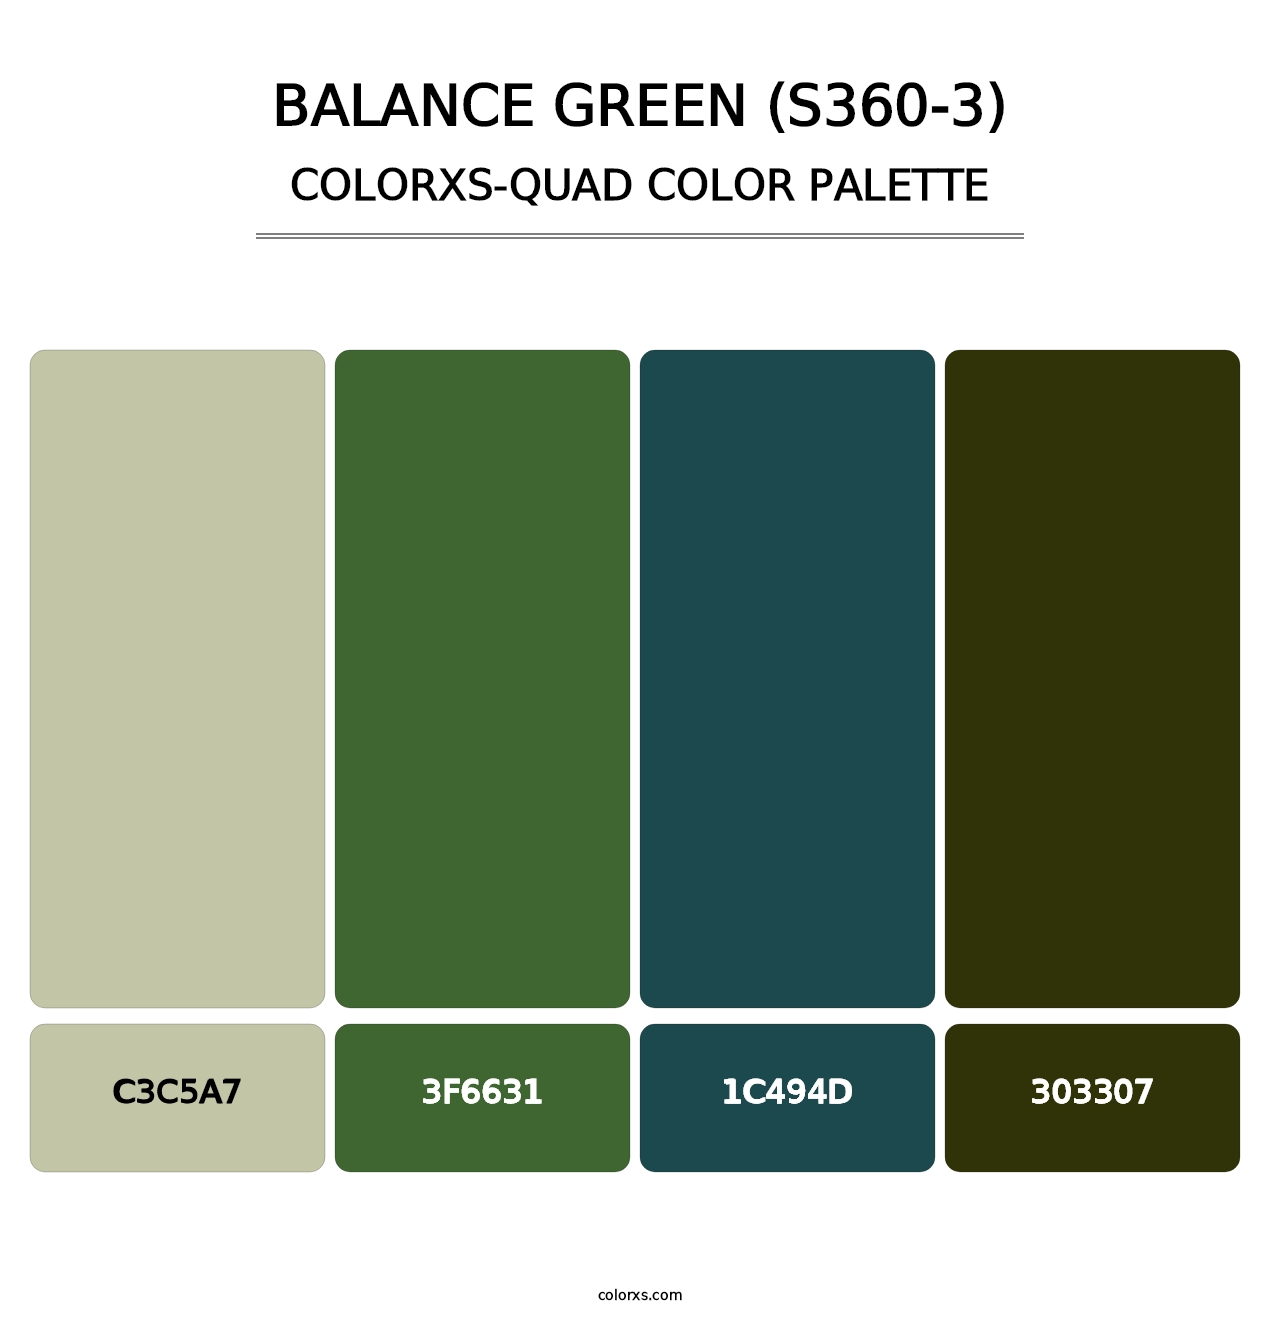 Balance Green (S360-3) - Colorxs Quad Palette